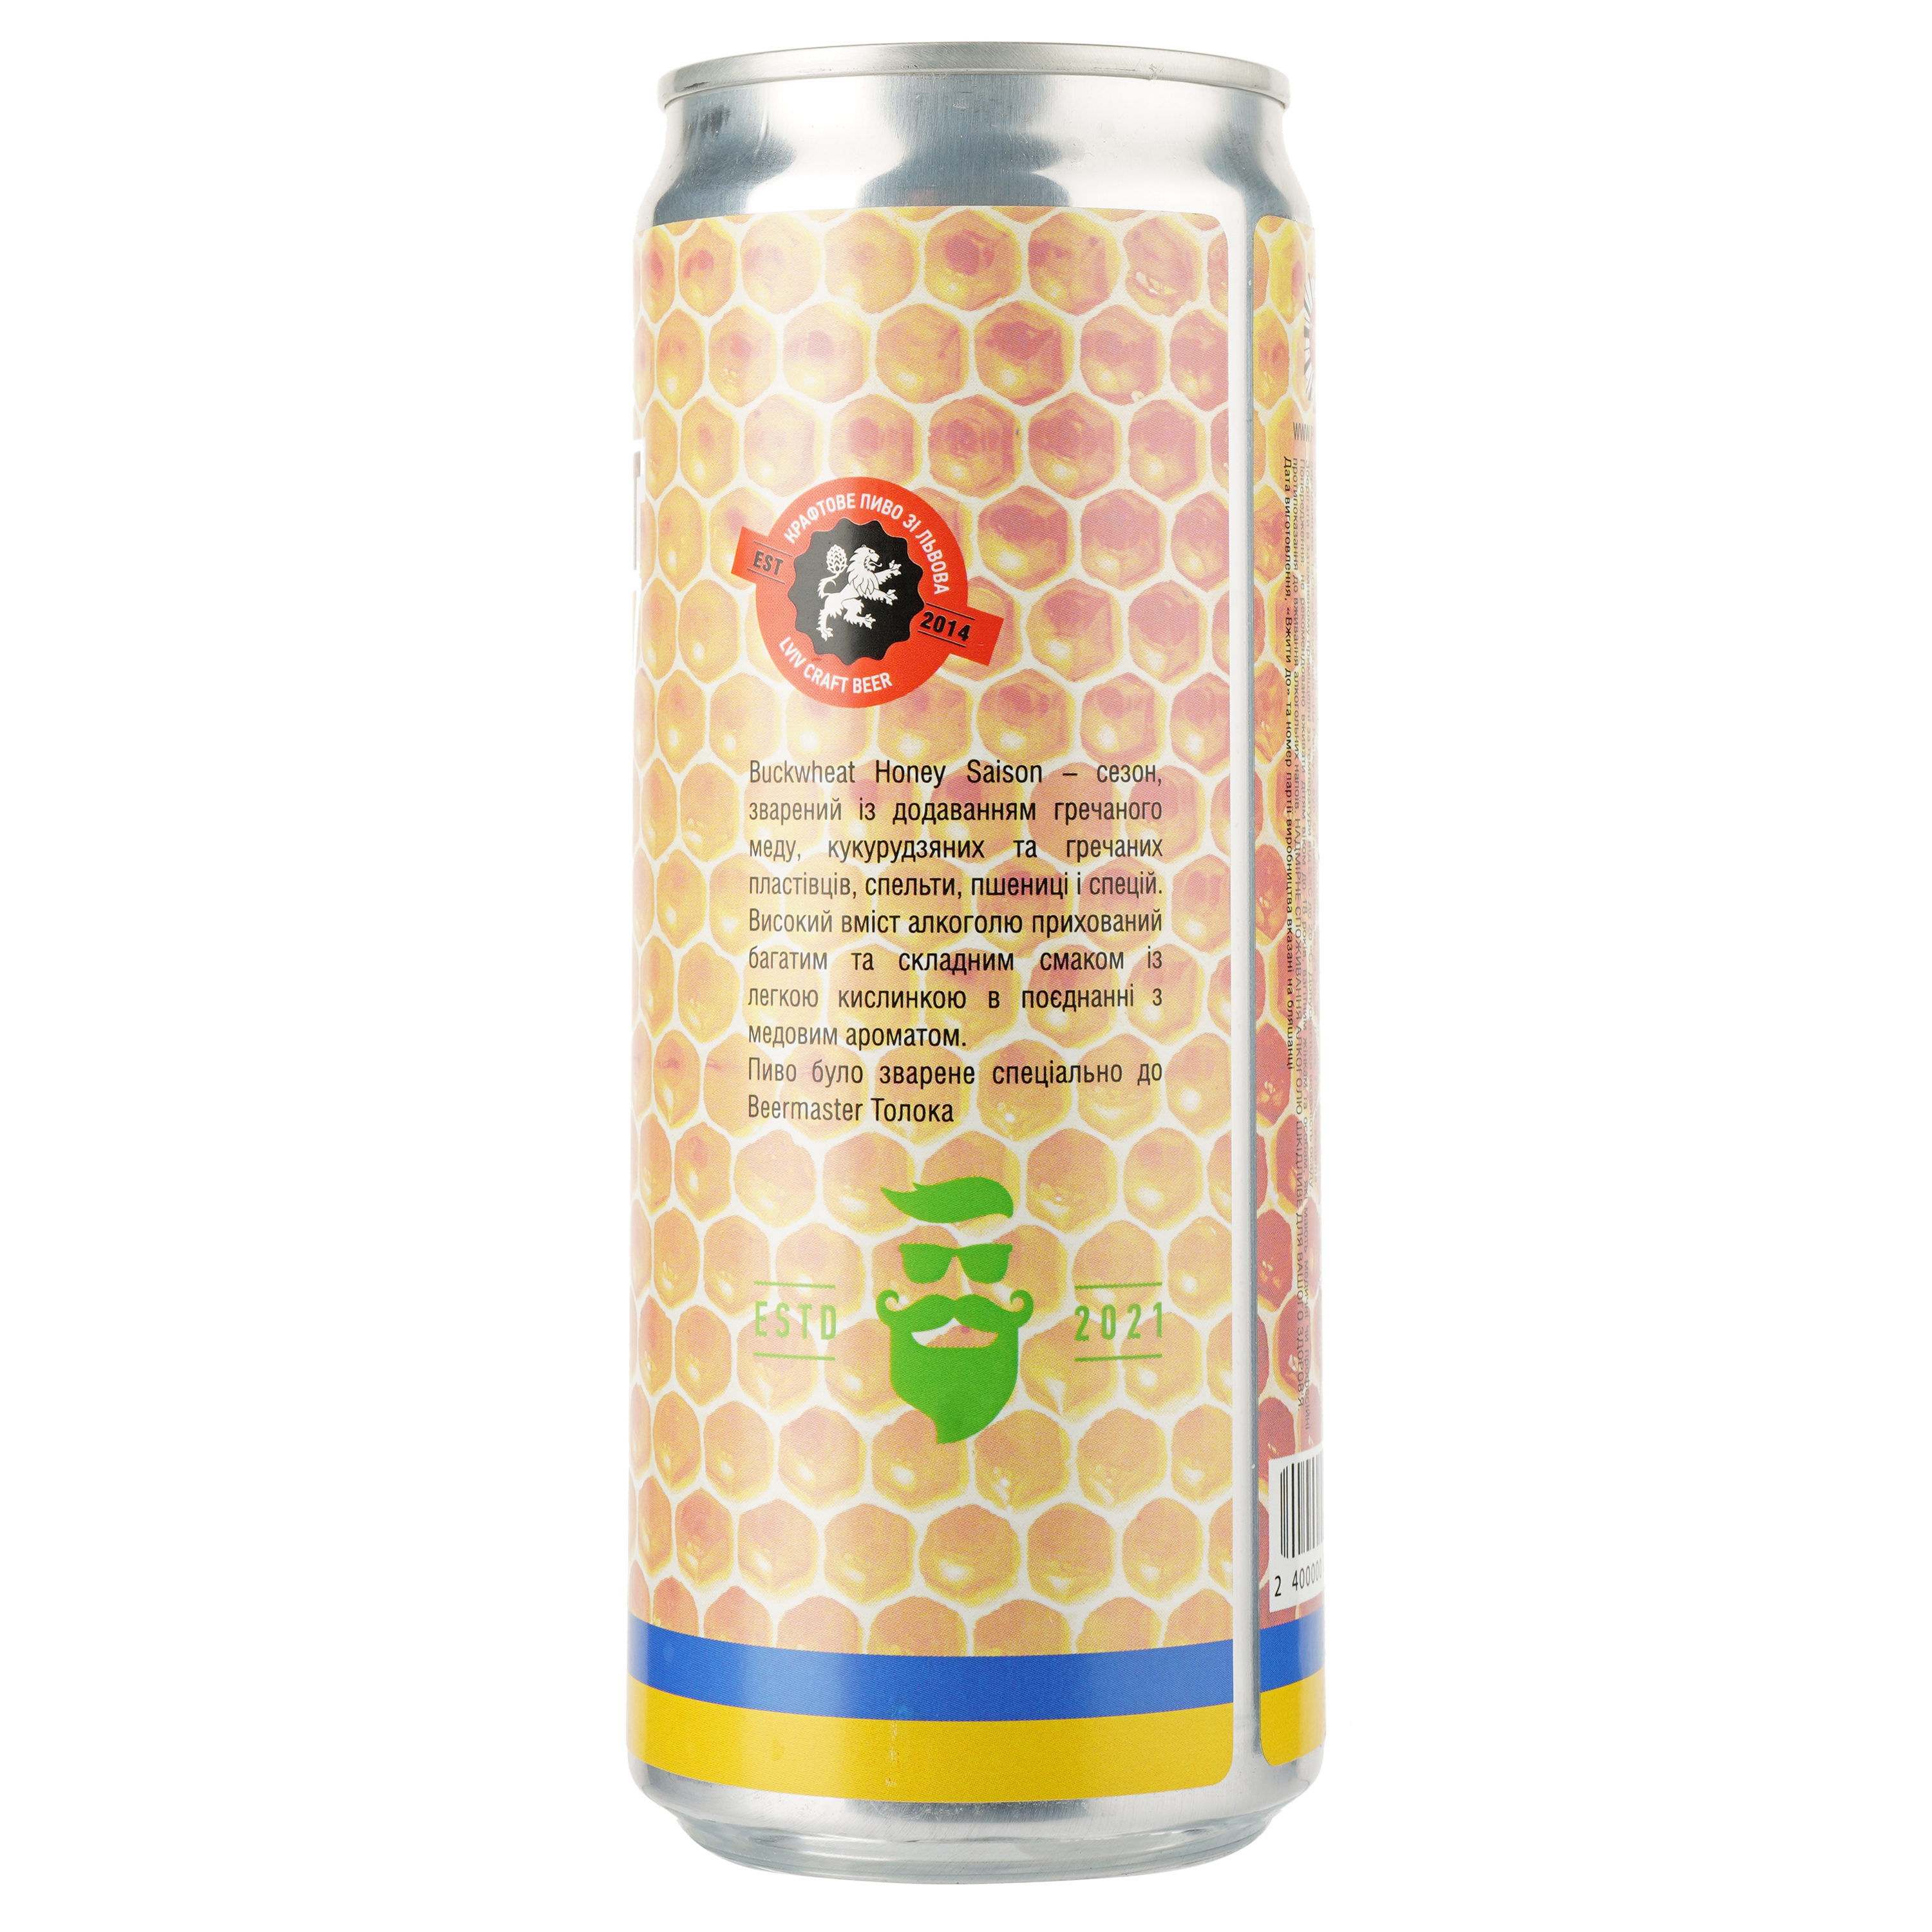 Пиво Правда Buckwheat Honey Saison, 8,3%, 0,33 л, з/б - фото 2